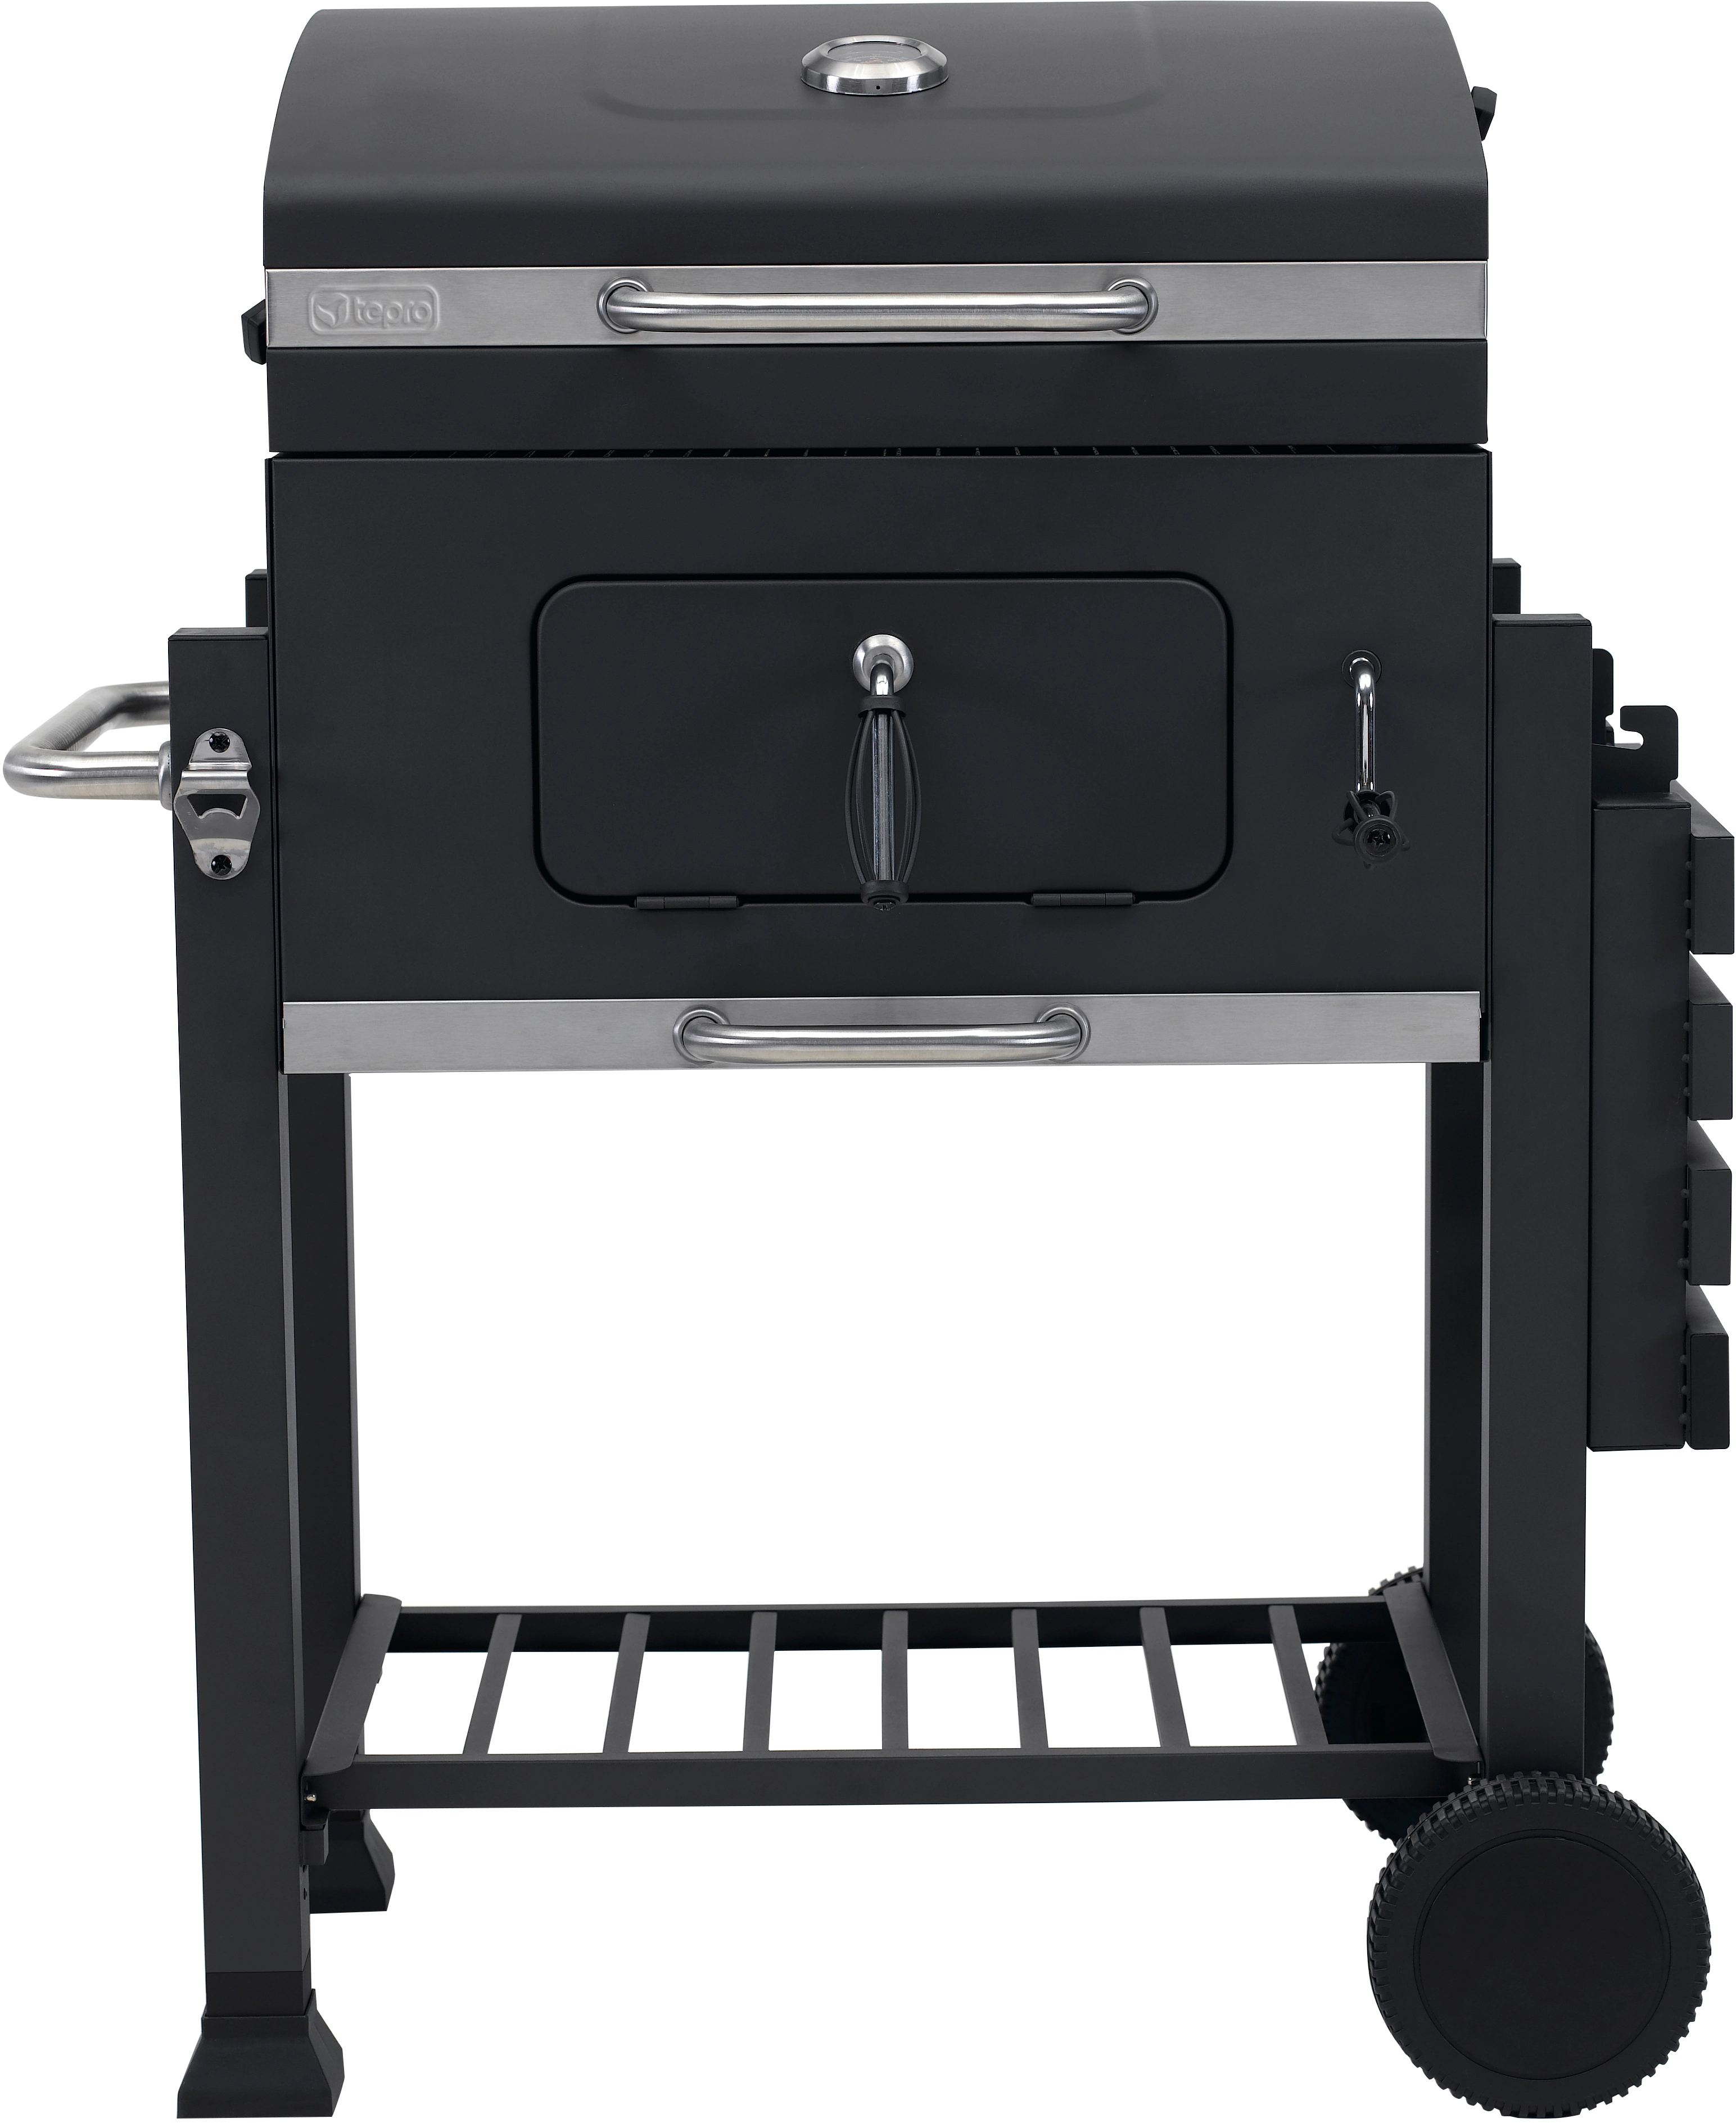 Tepro höhenverstellbarer Click OBI Kohlewanne bei mit Holzkohle-Grillwagen kaufen Toronto